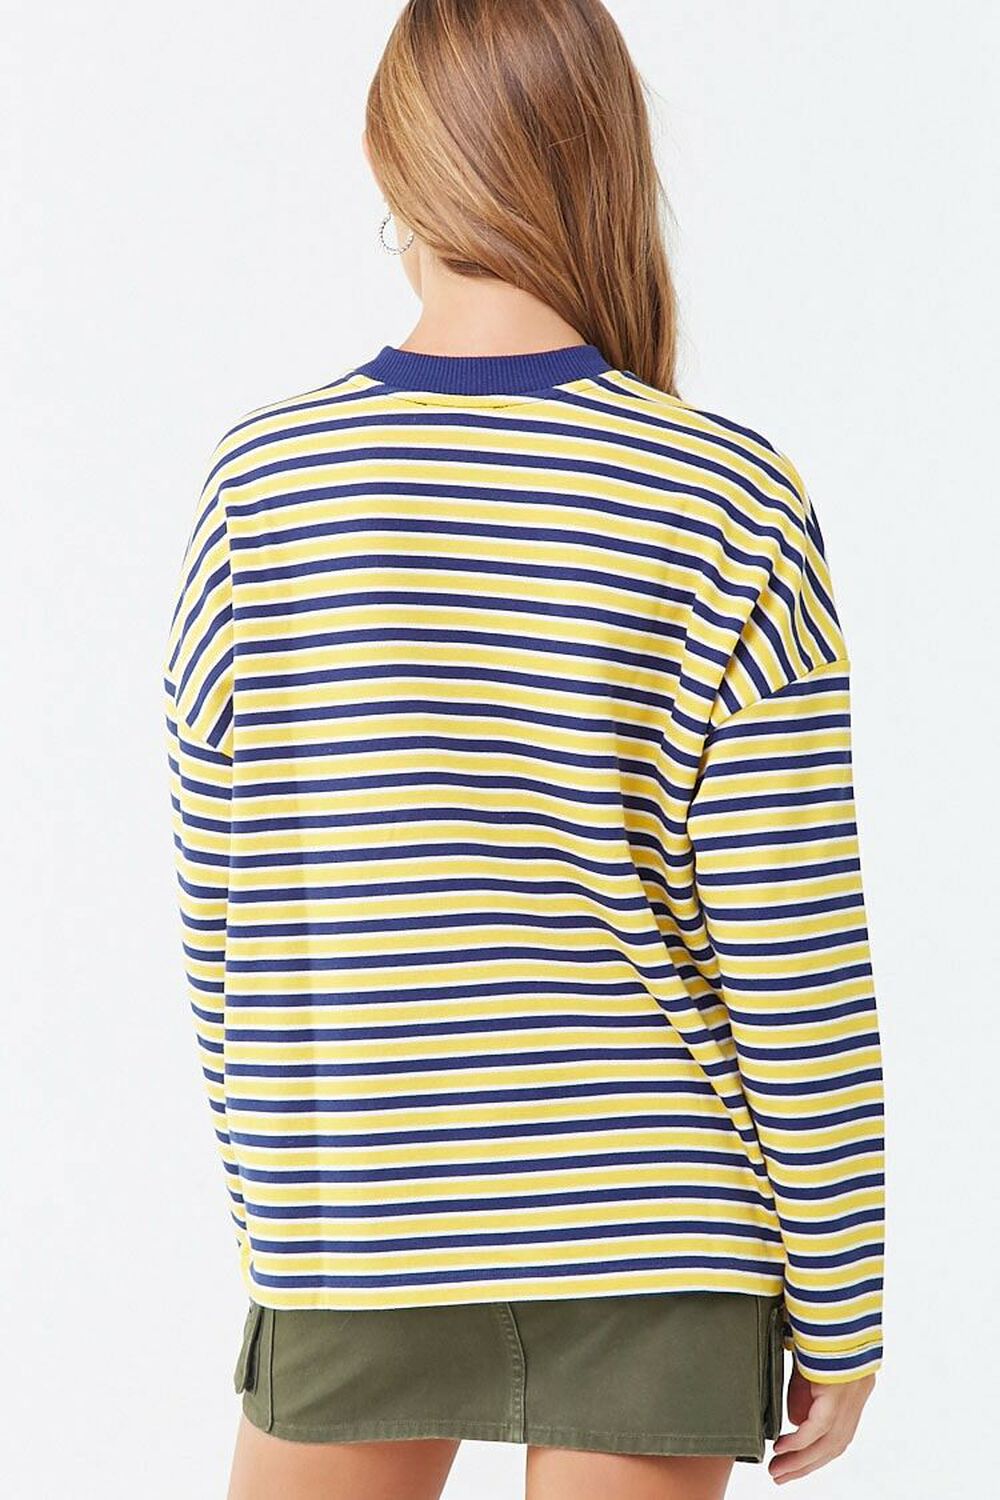 NAVY/YELLOW Striped Boxy Sweatshirt, image 3